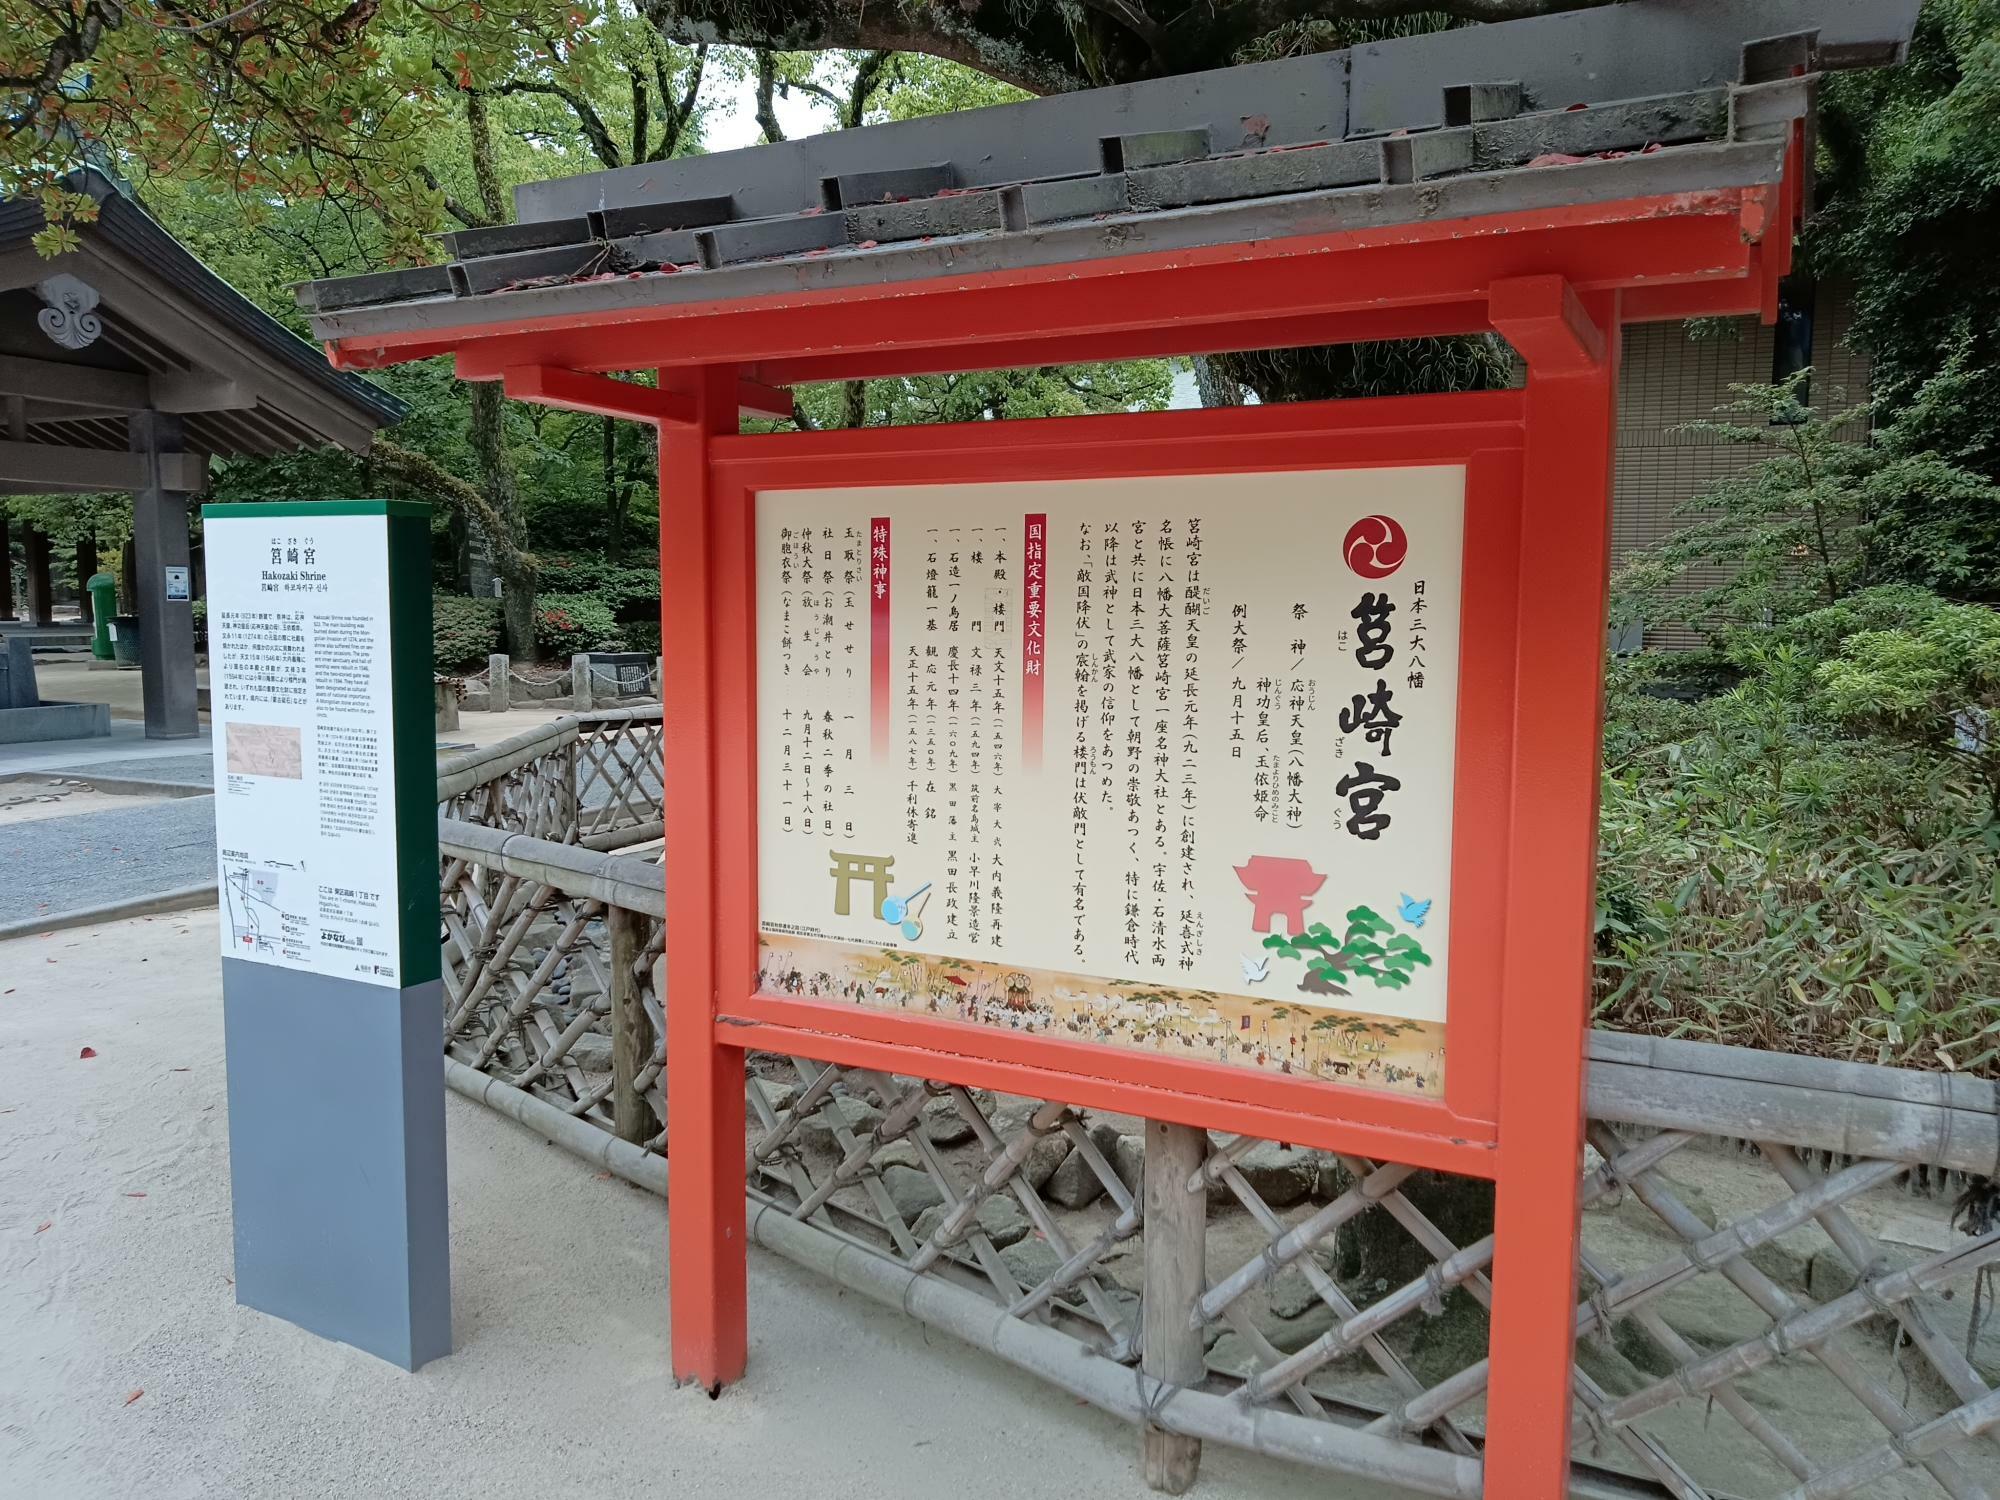 日本三大八幡「筥崎宮」は、開運勝利の神「勝運の神」としても有名です